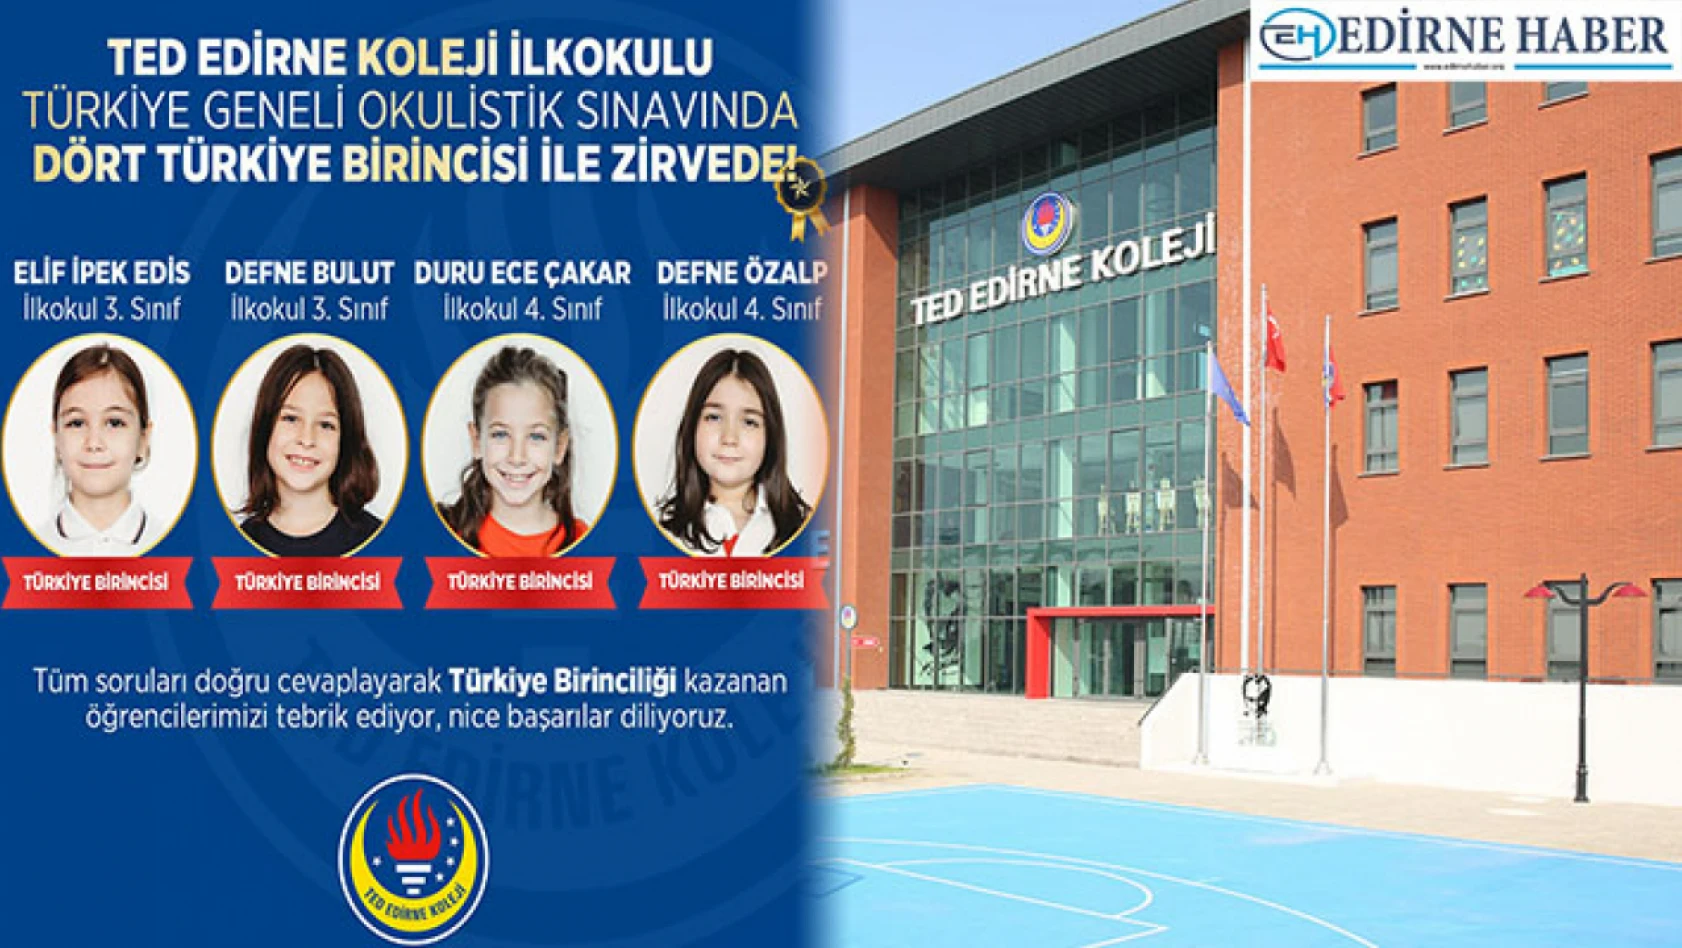 TED Edirne Koleji'nden Okulistik'te 4 Türkiye birinciliği